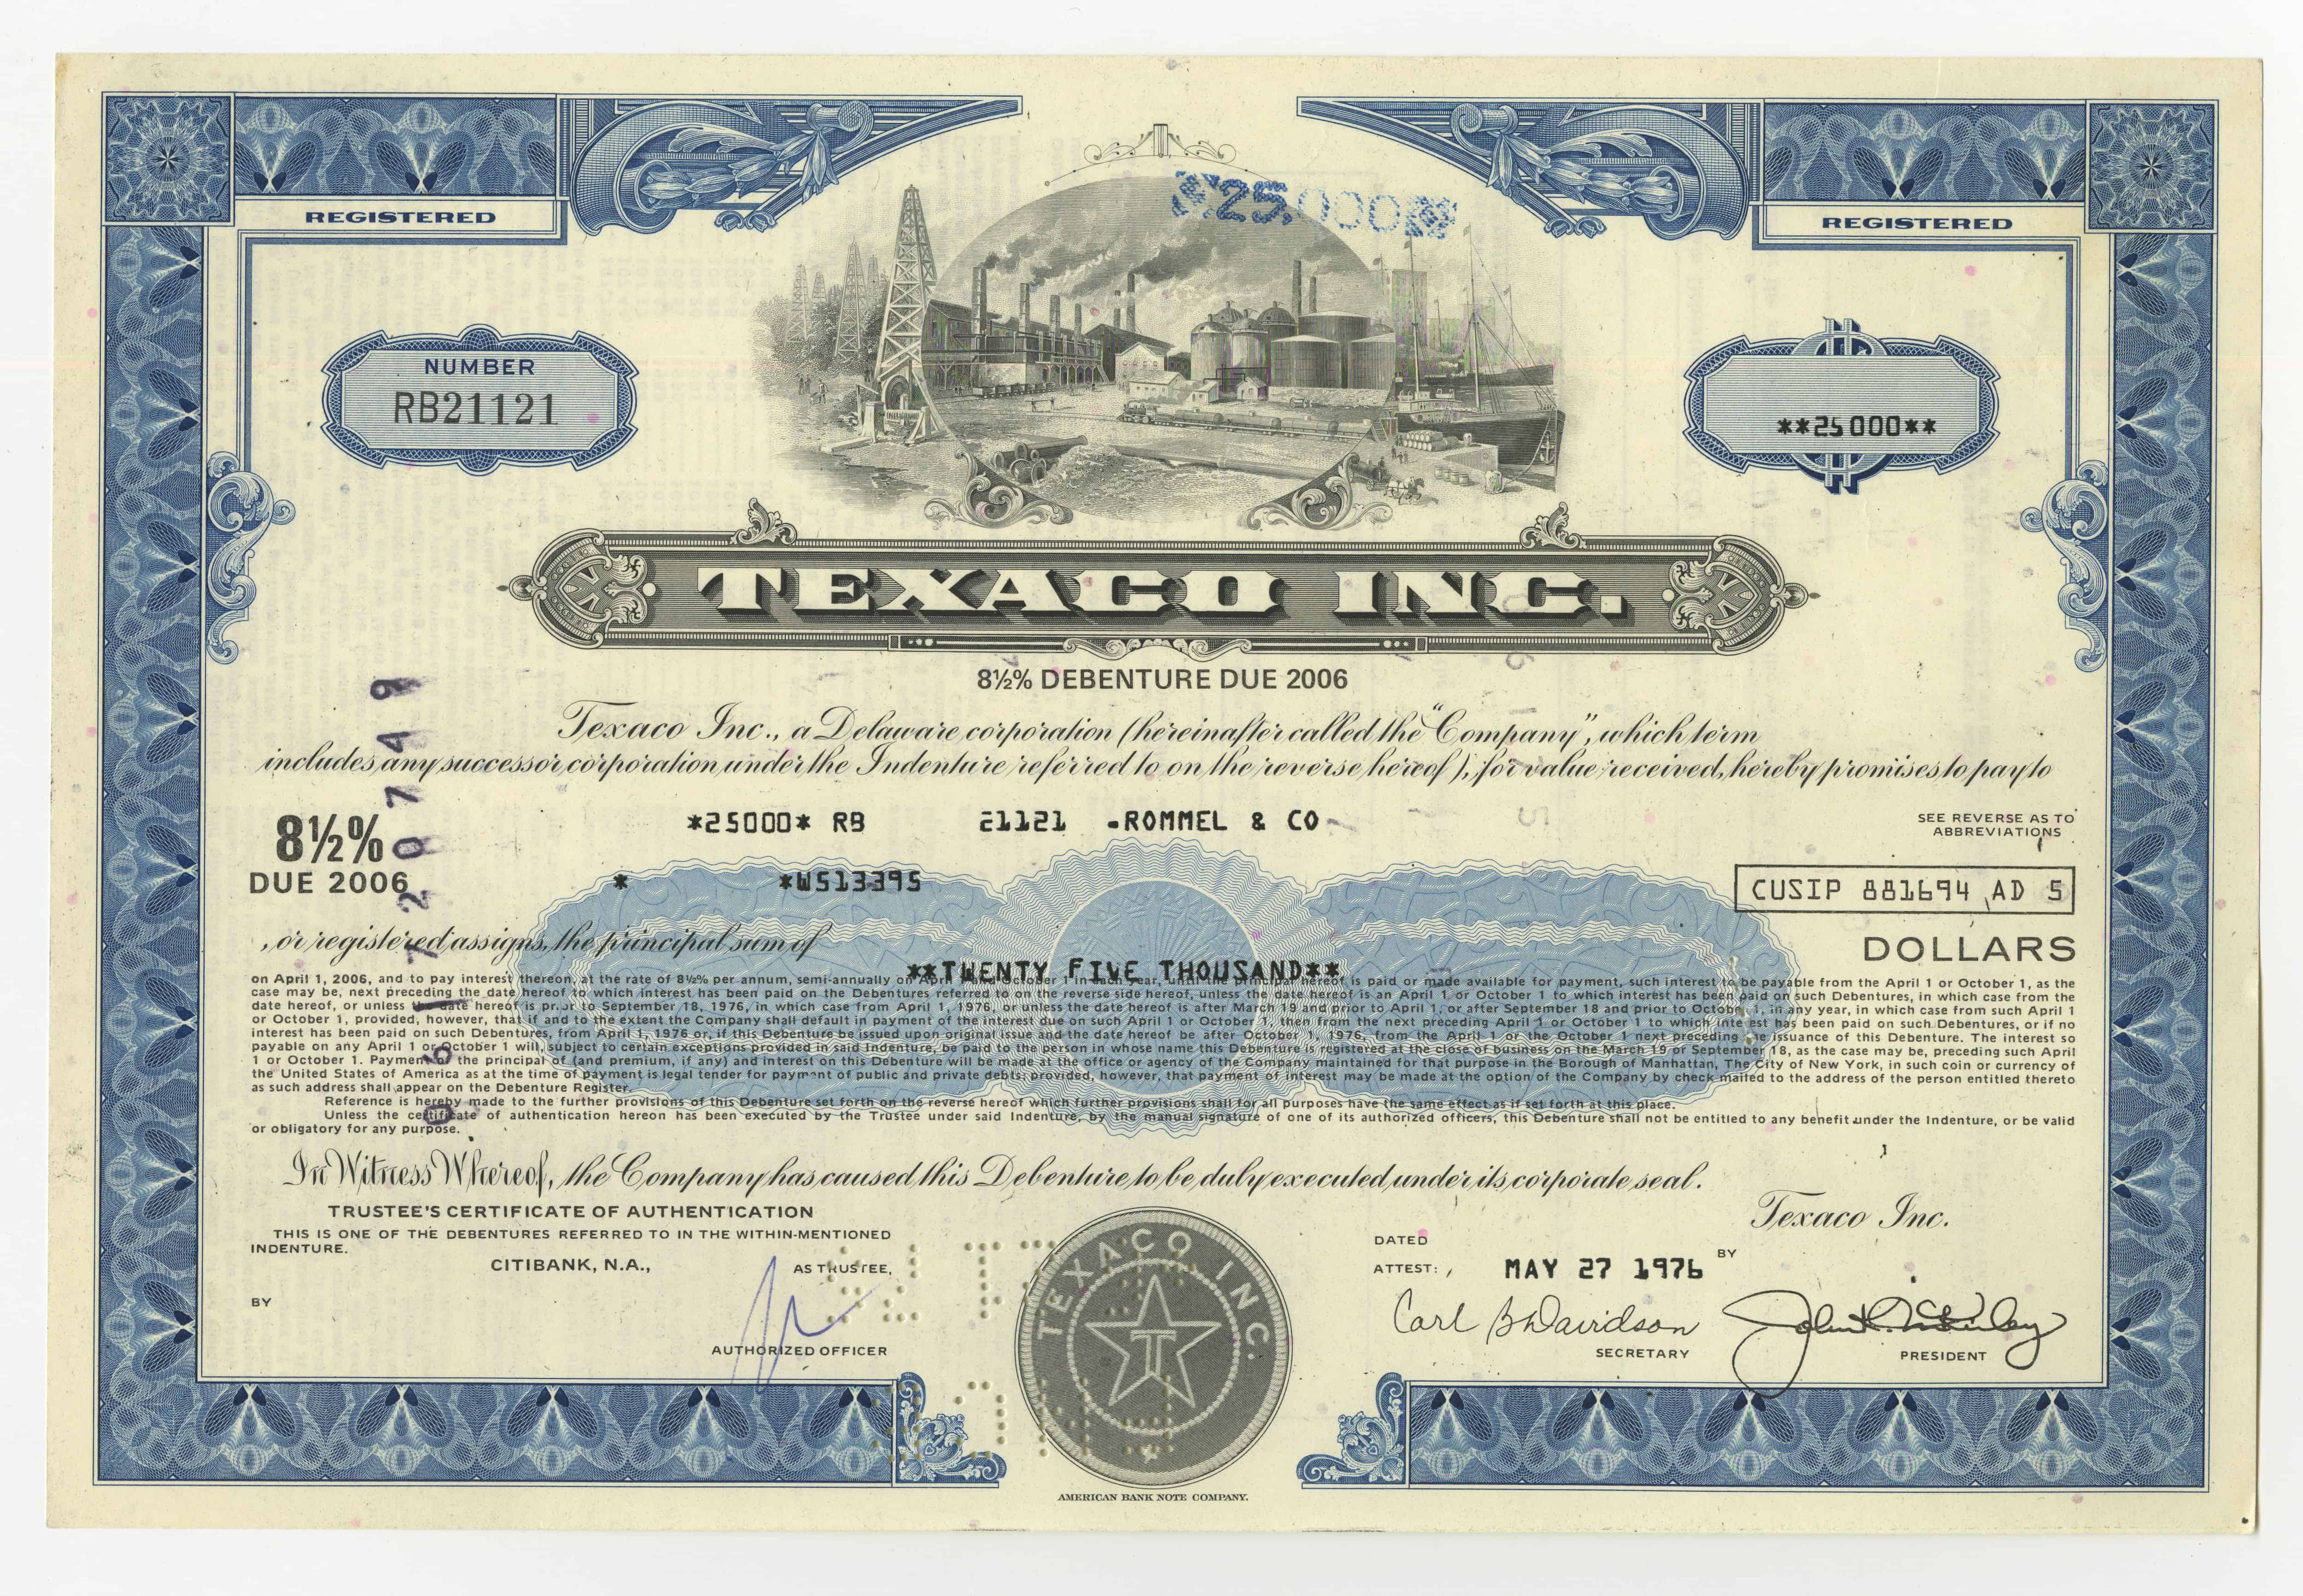 Obligacje Texaco Inc. o wartości 25000 dolarów z dnia 27 maja 1976 roku